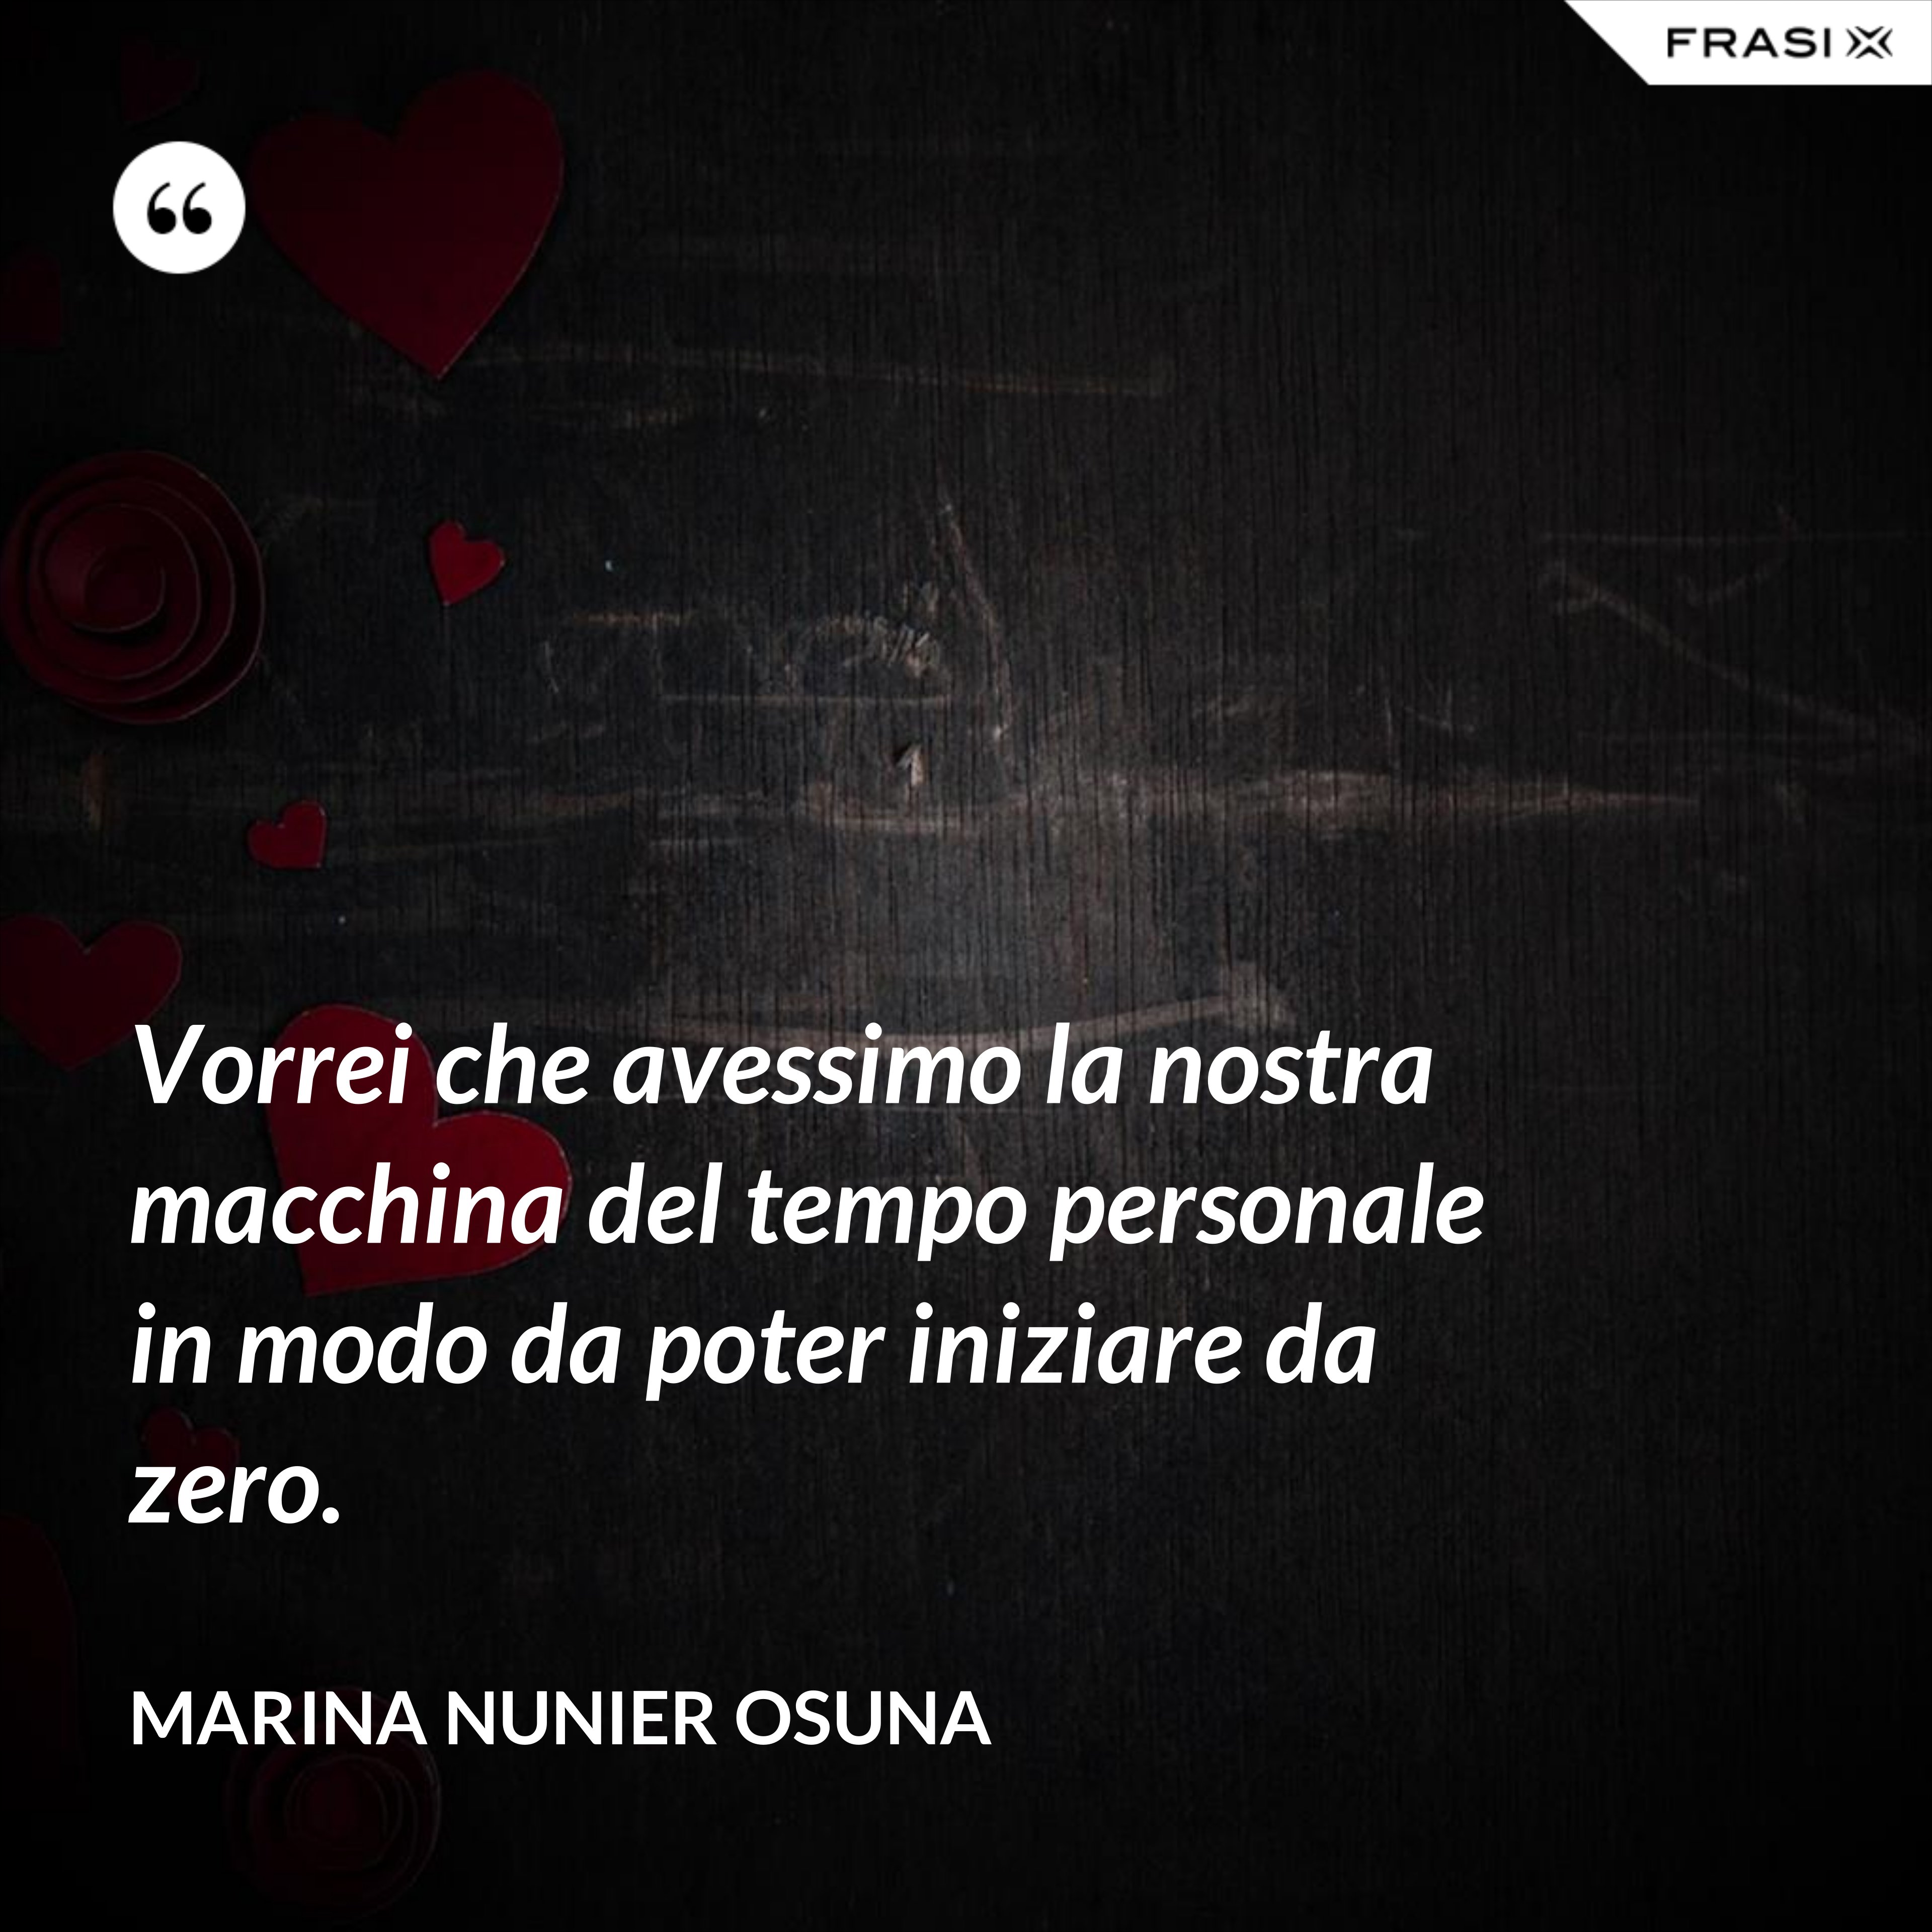 Vorrei che avessimo la nostra macchina del tempo personale in modo da poter iniziare da zero. - Marina Nunier Osuna